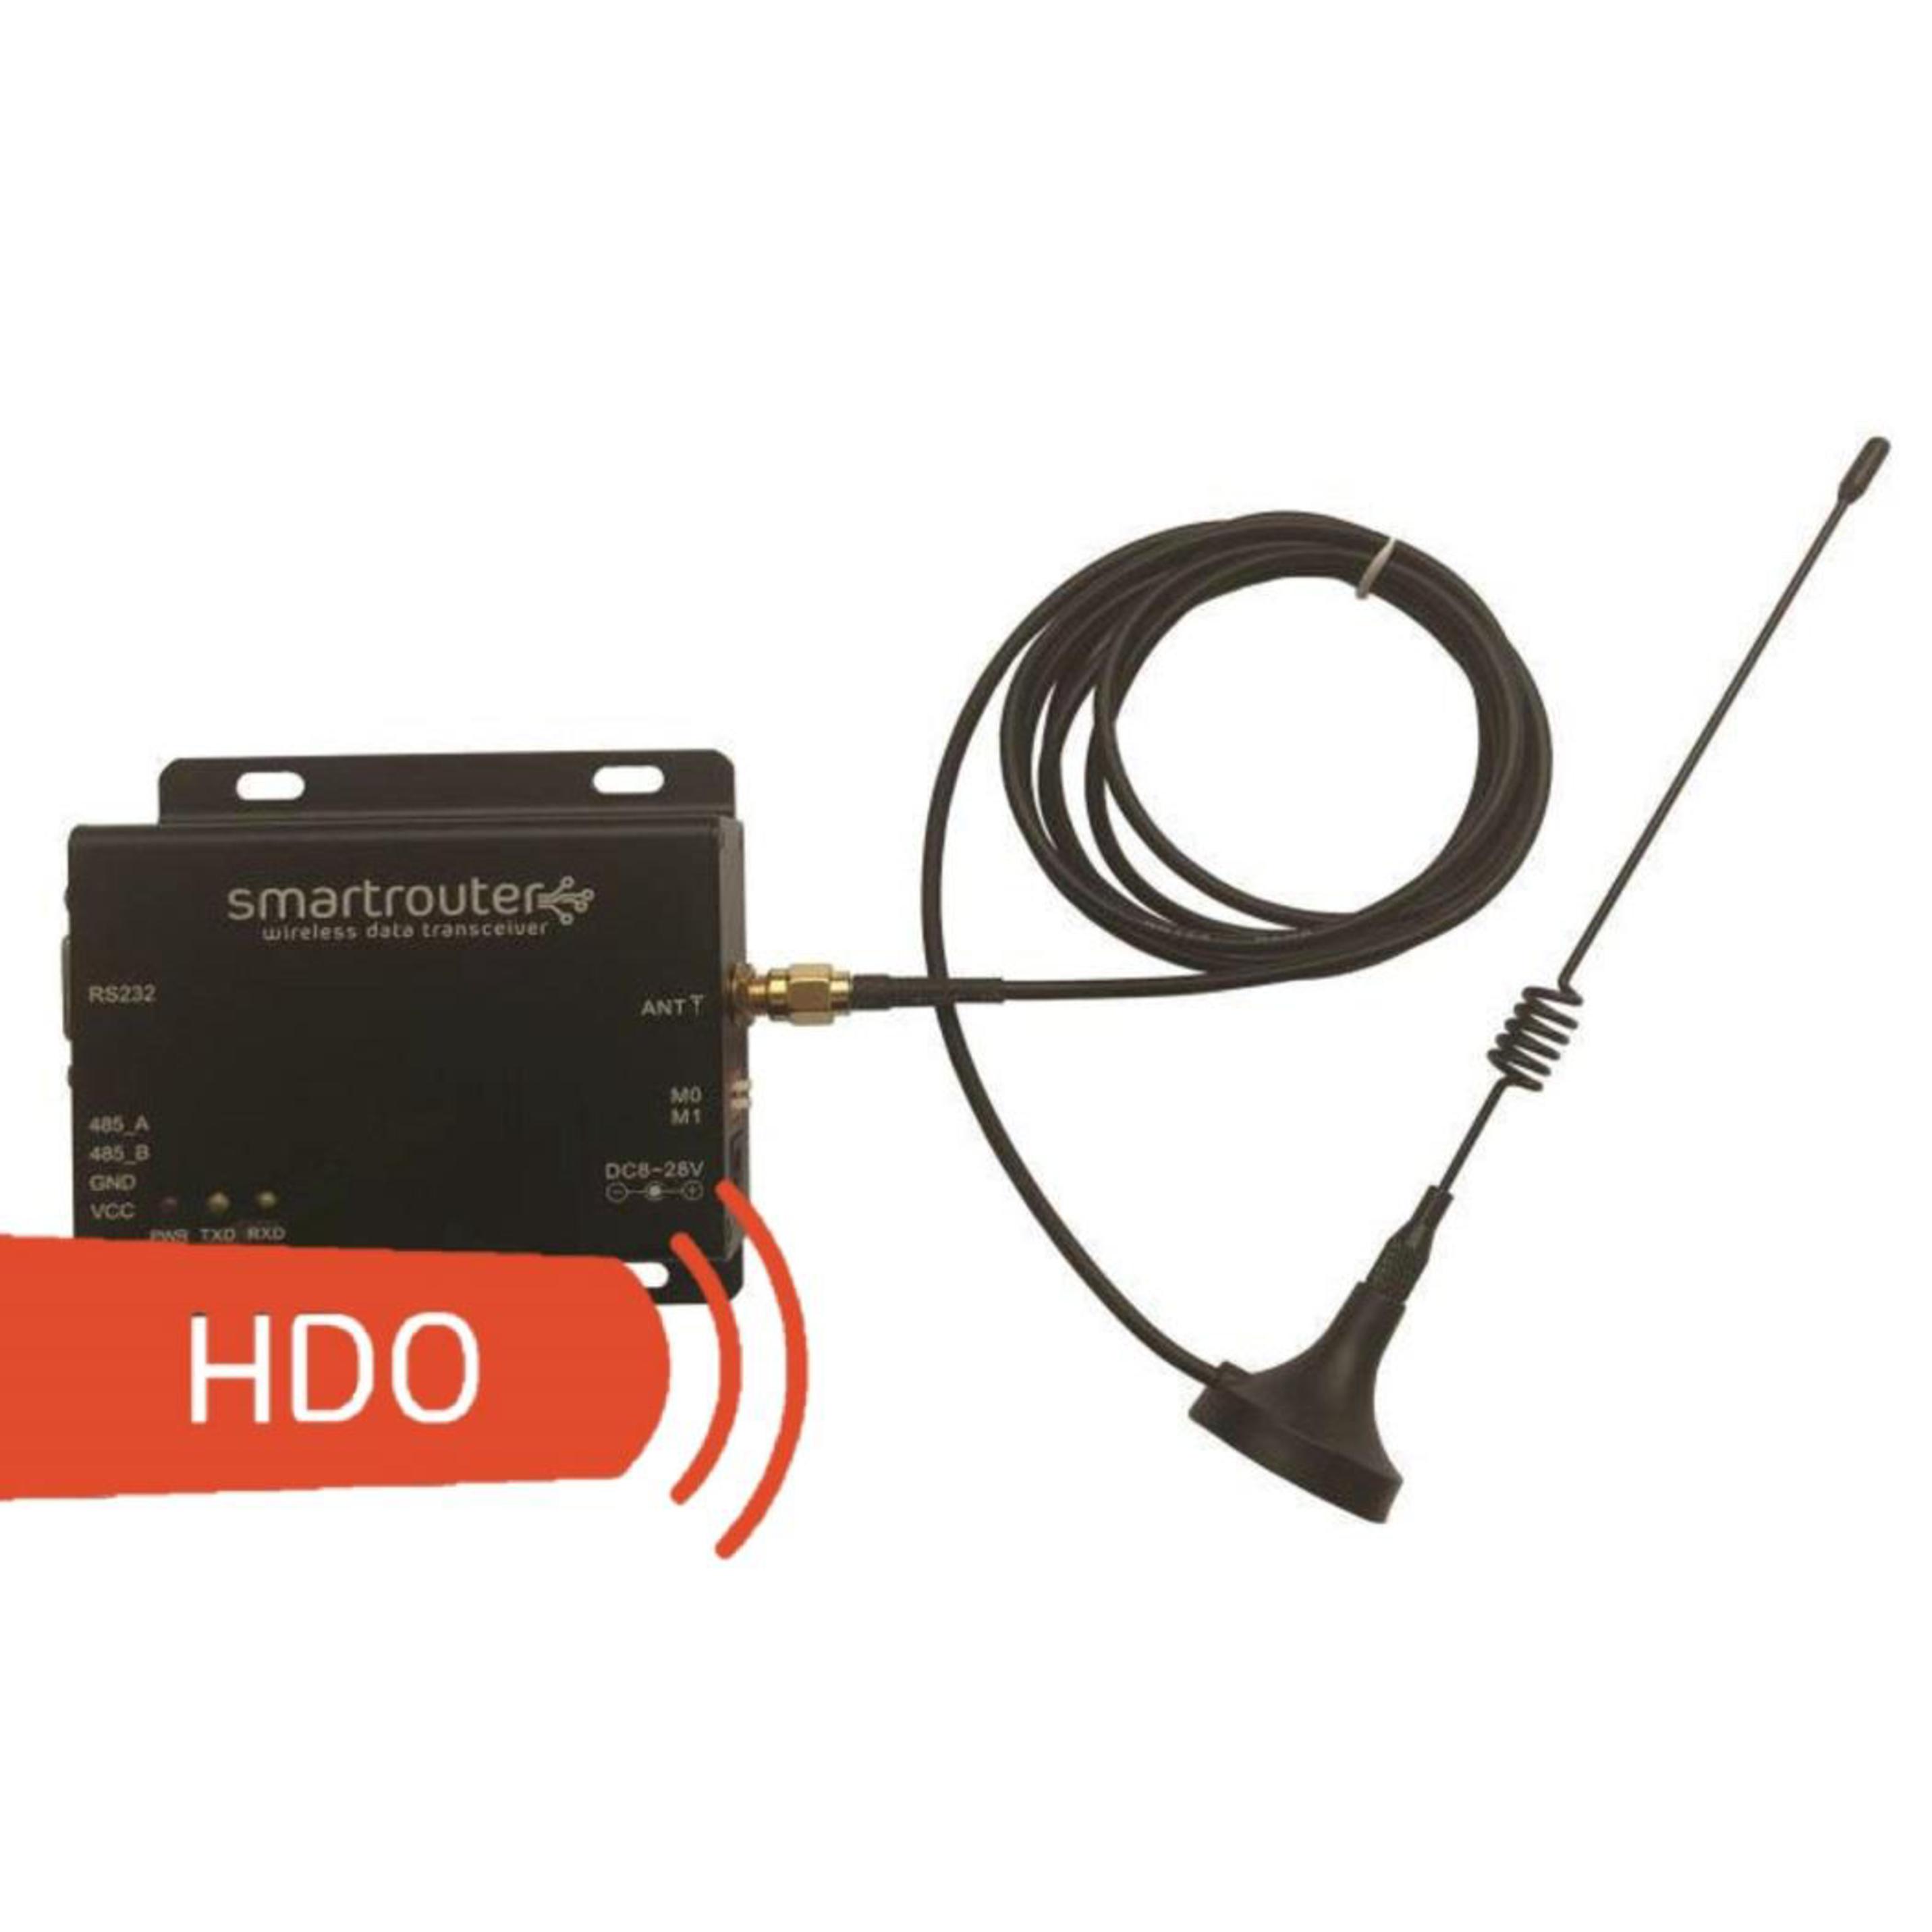 Smart Router s HDO - Komplet vysielač - prijímač